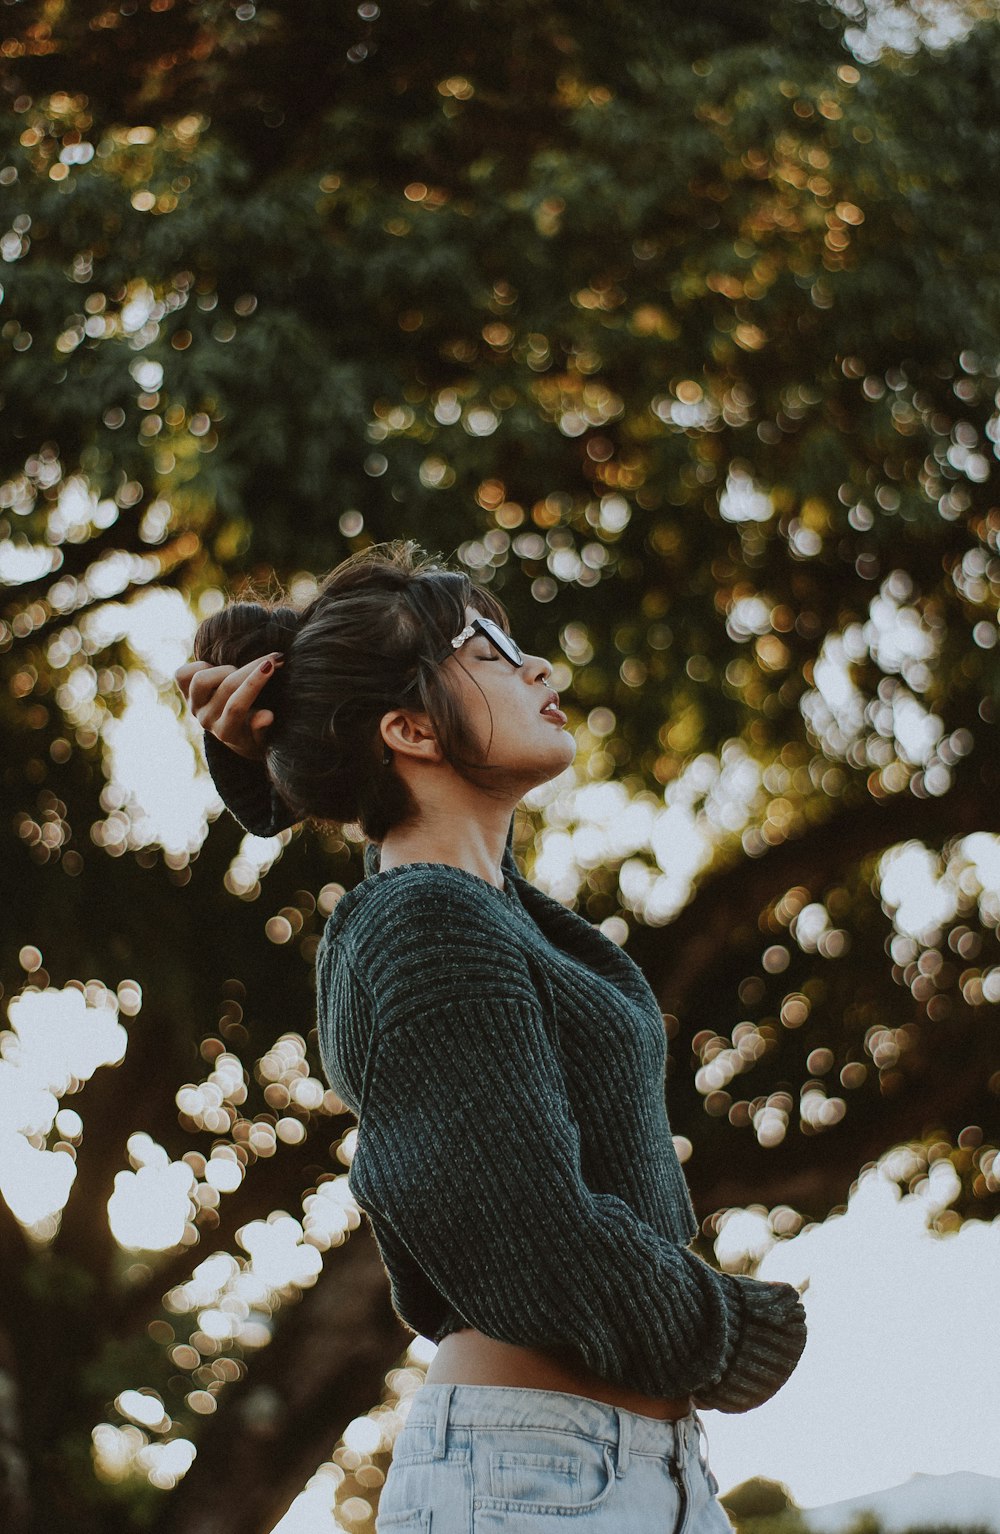 나무 근처에서 회색 스웨터를 입고 있는 여자